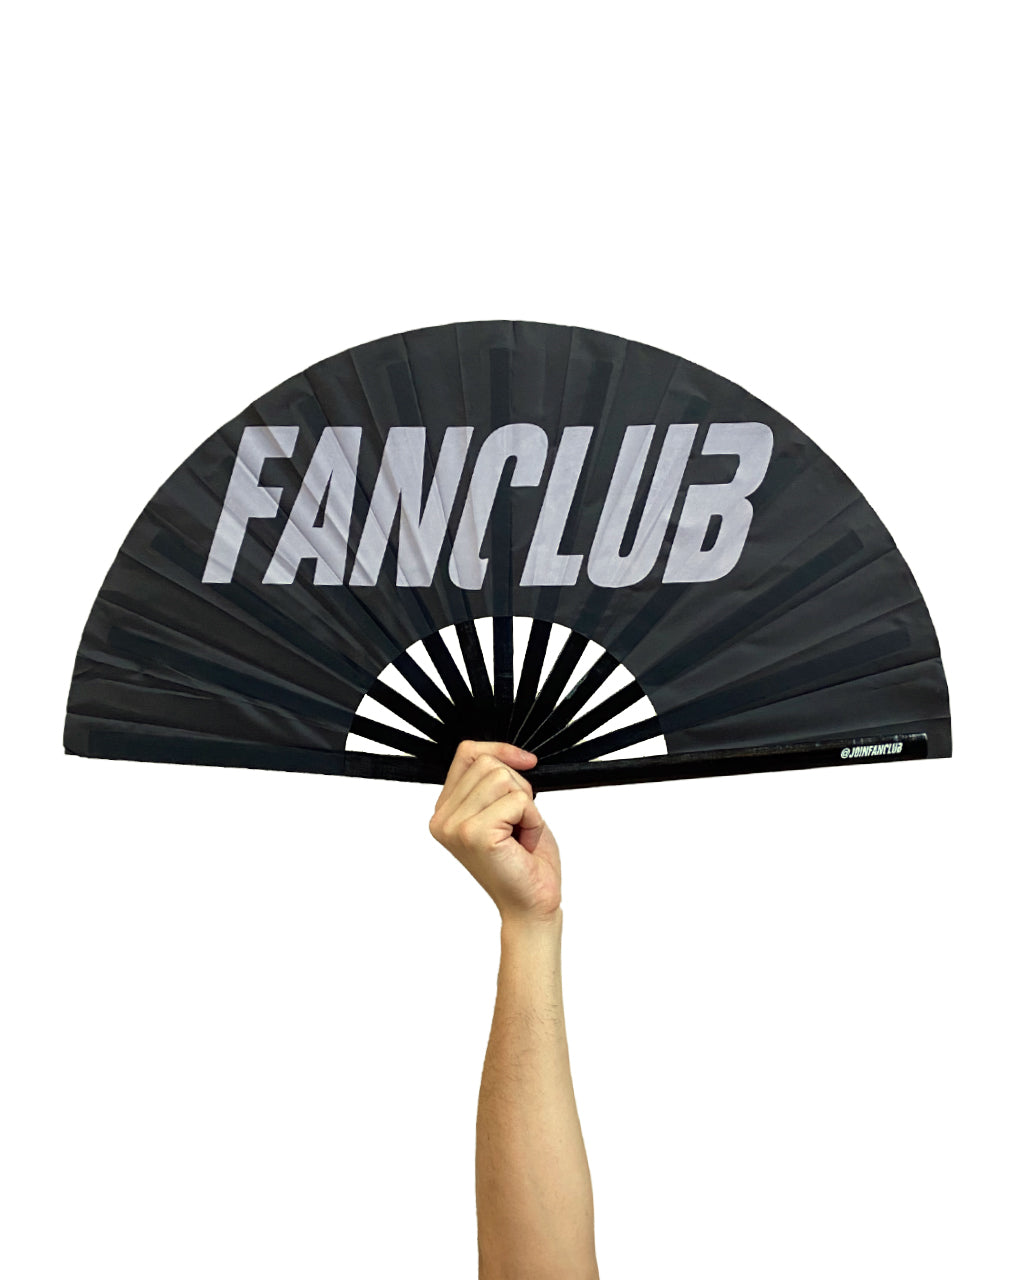 Fanclub fan